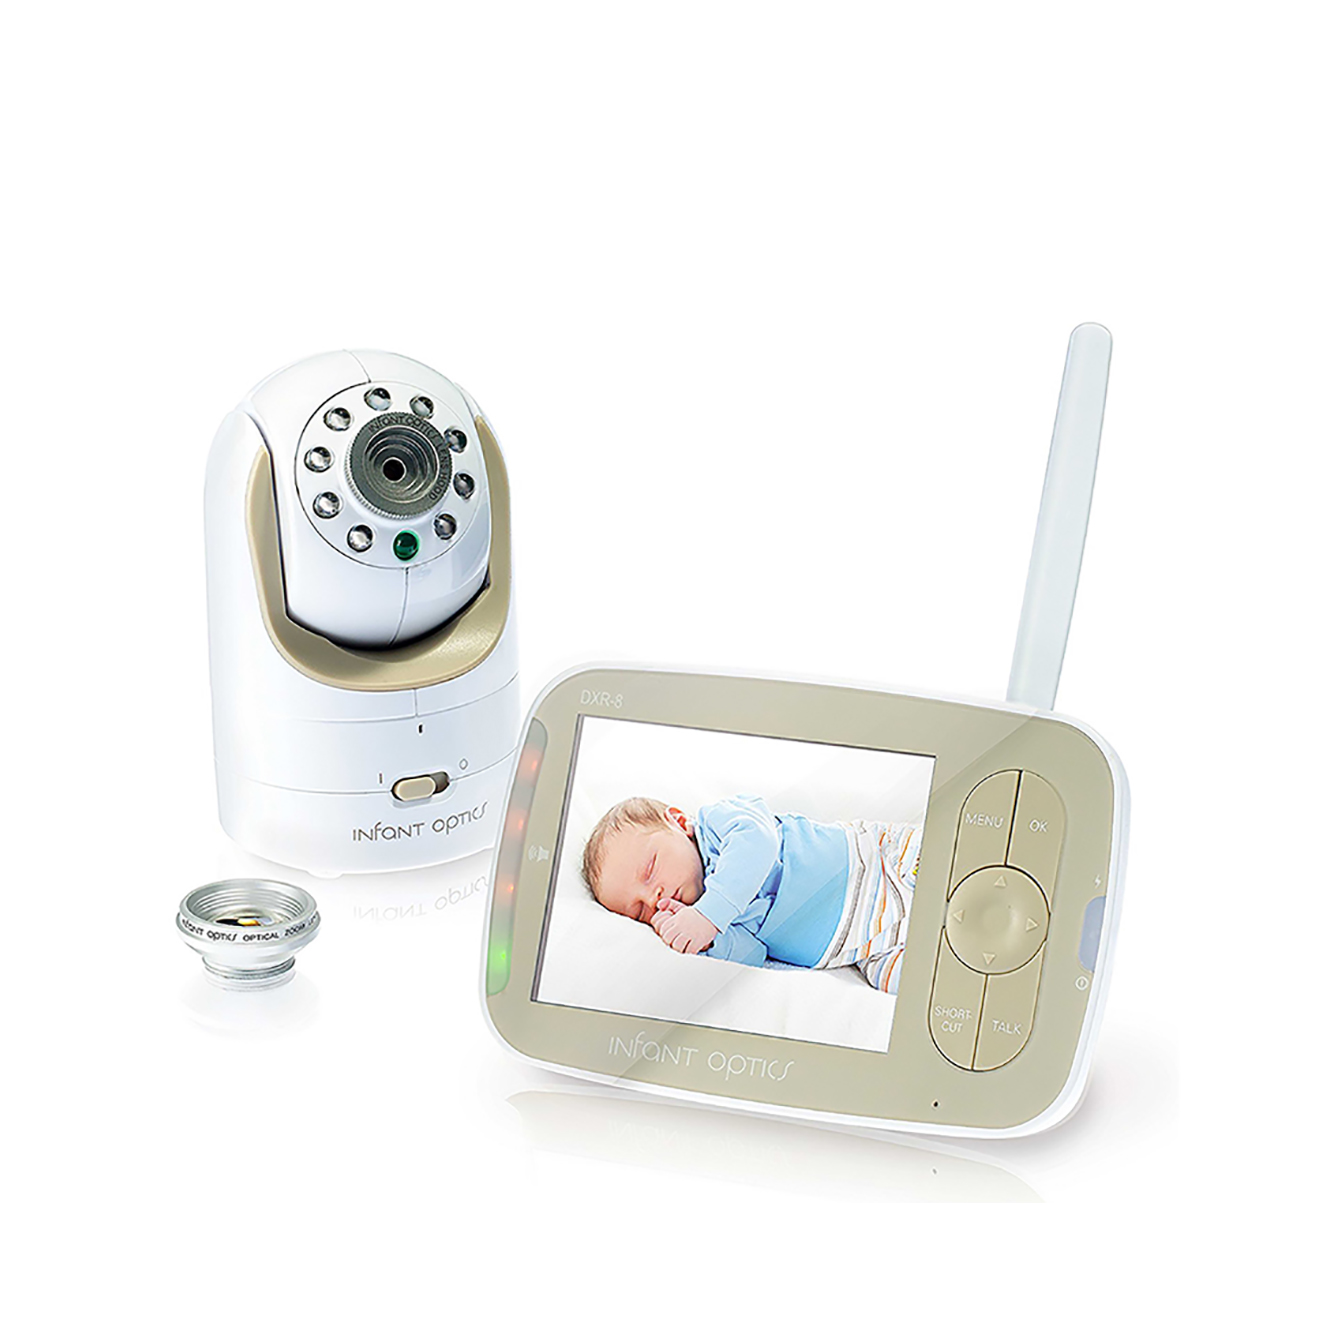  Infant Optics Baby Monitor